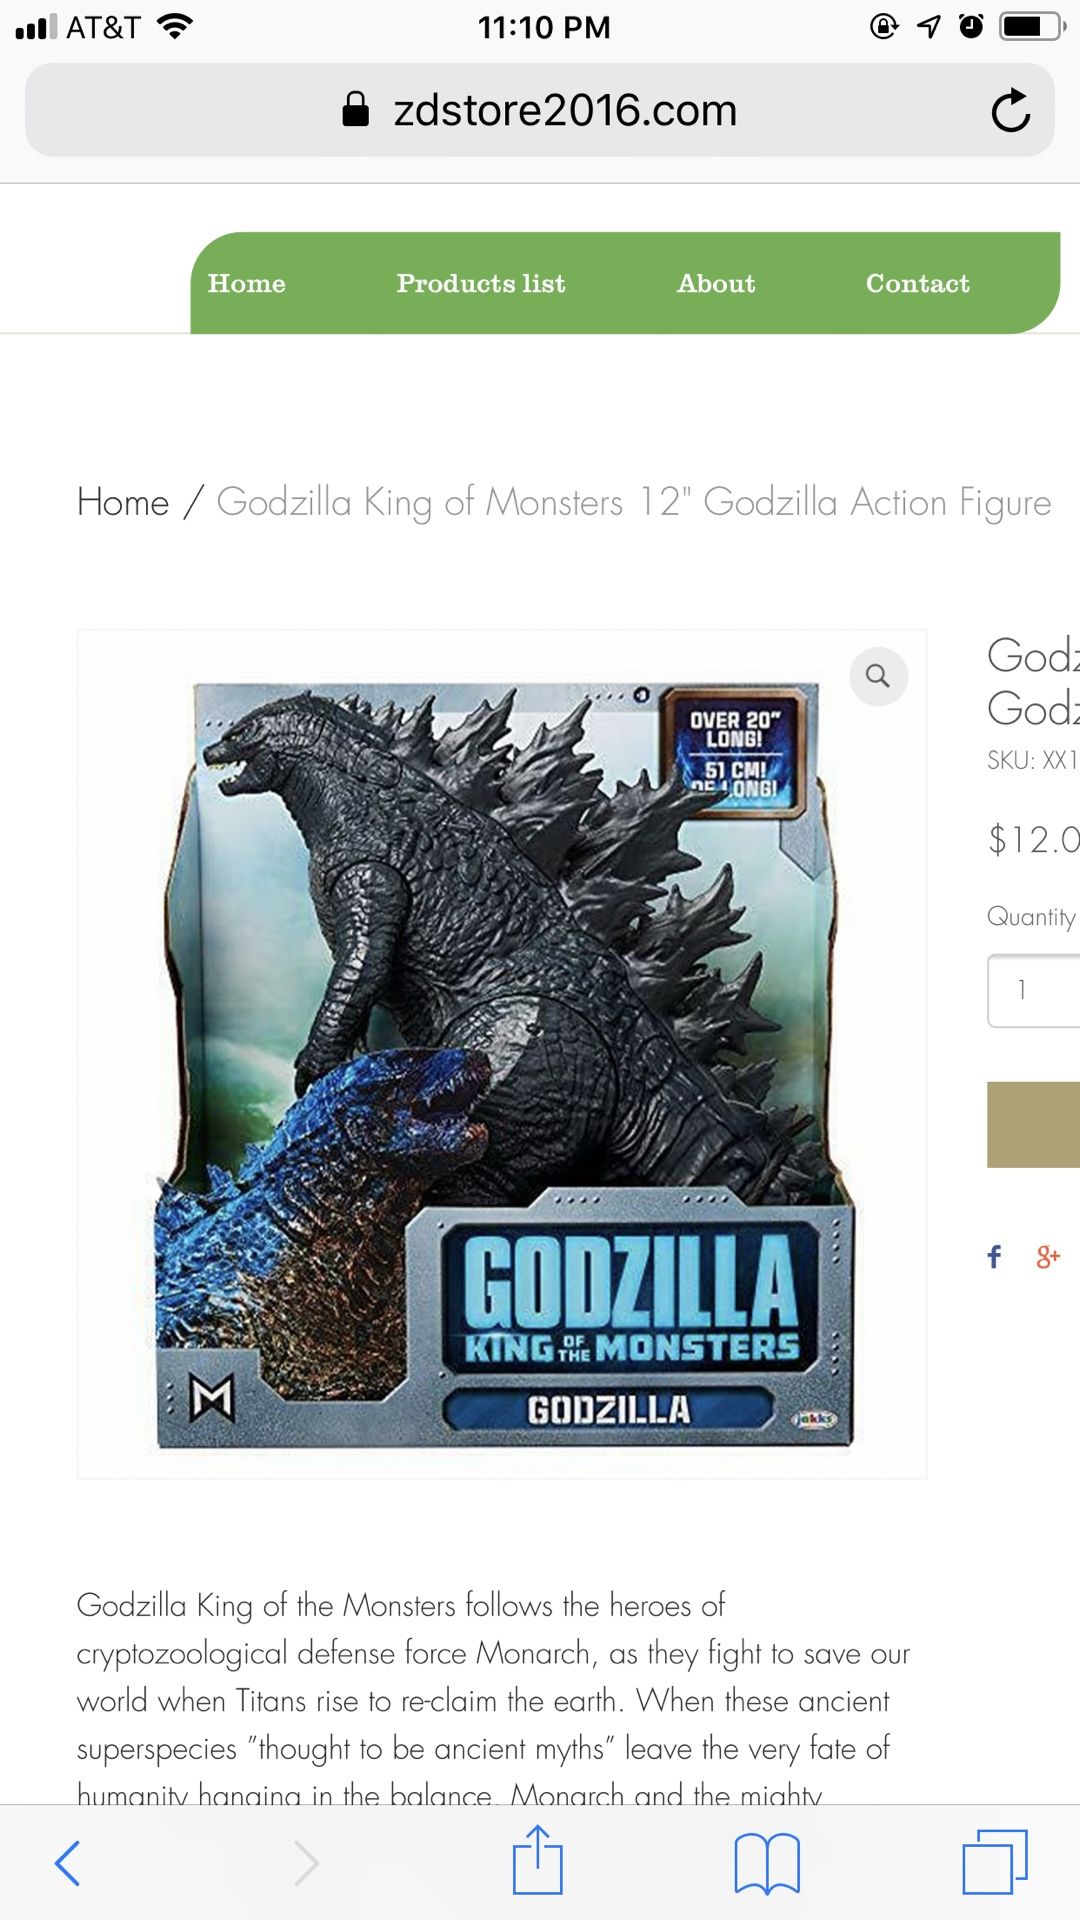 Godzilla King of Monsters 12" Godzilla Action Figure